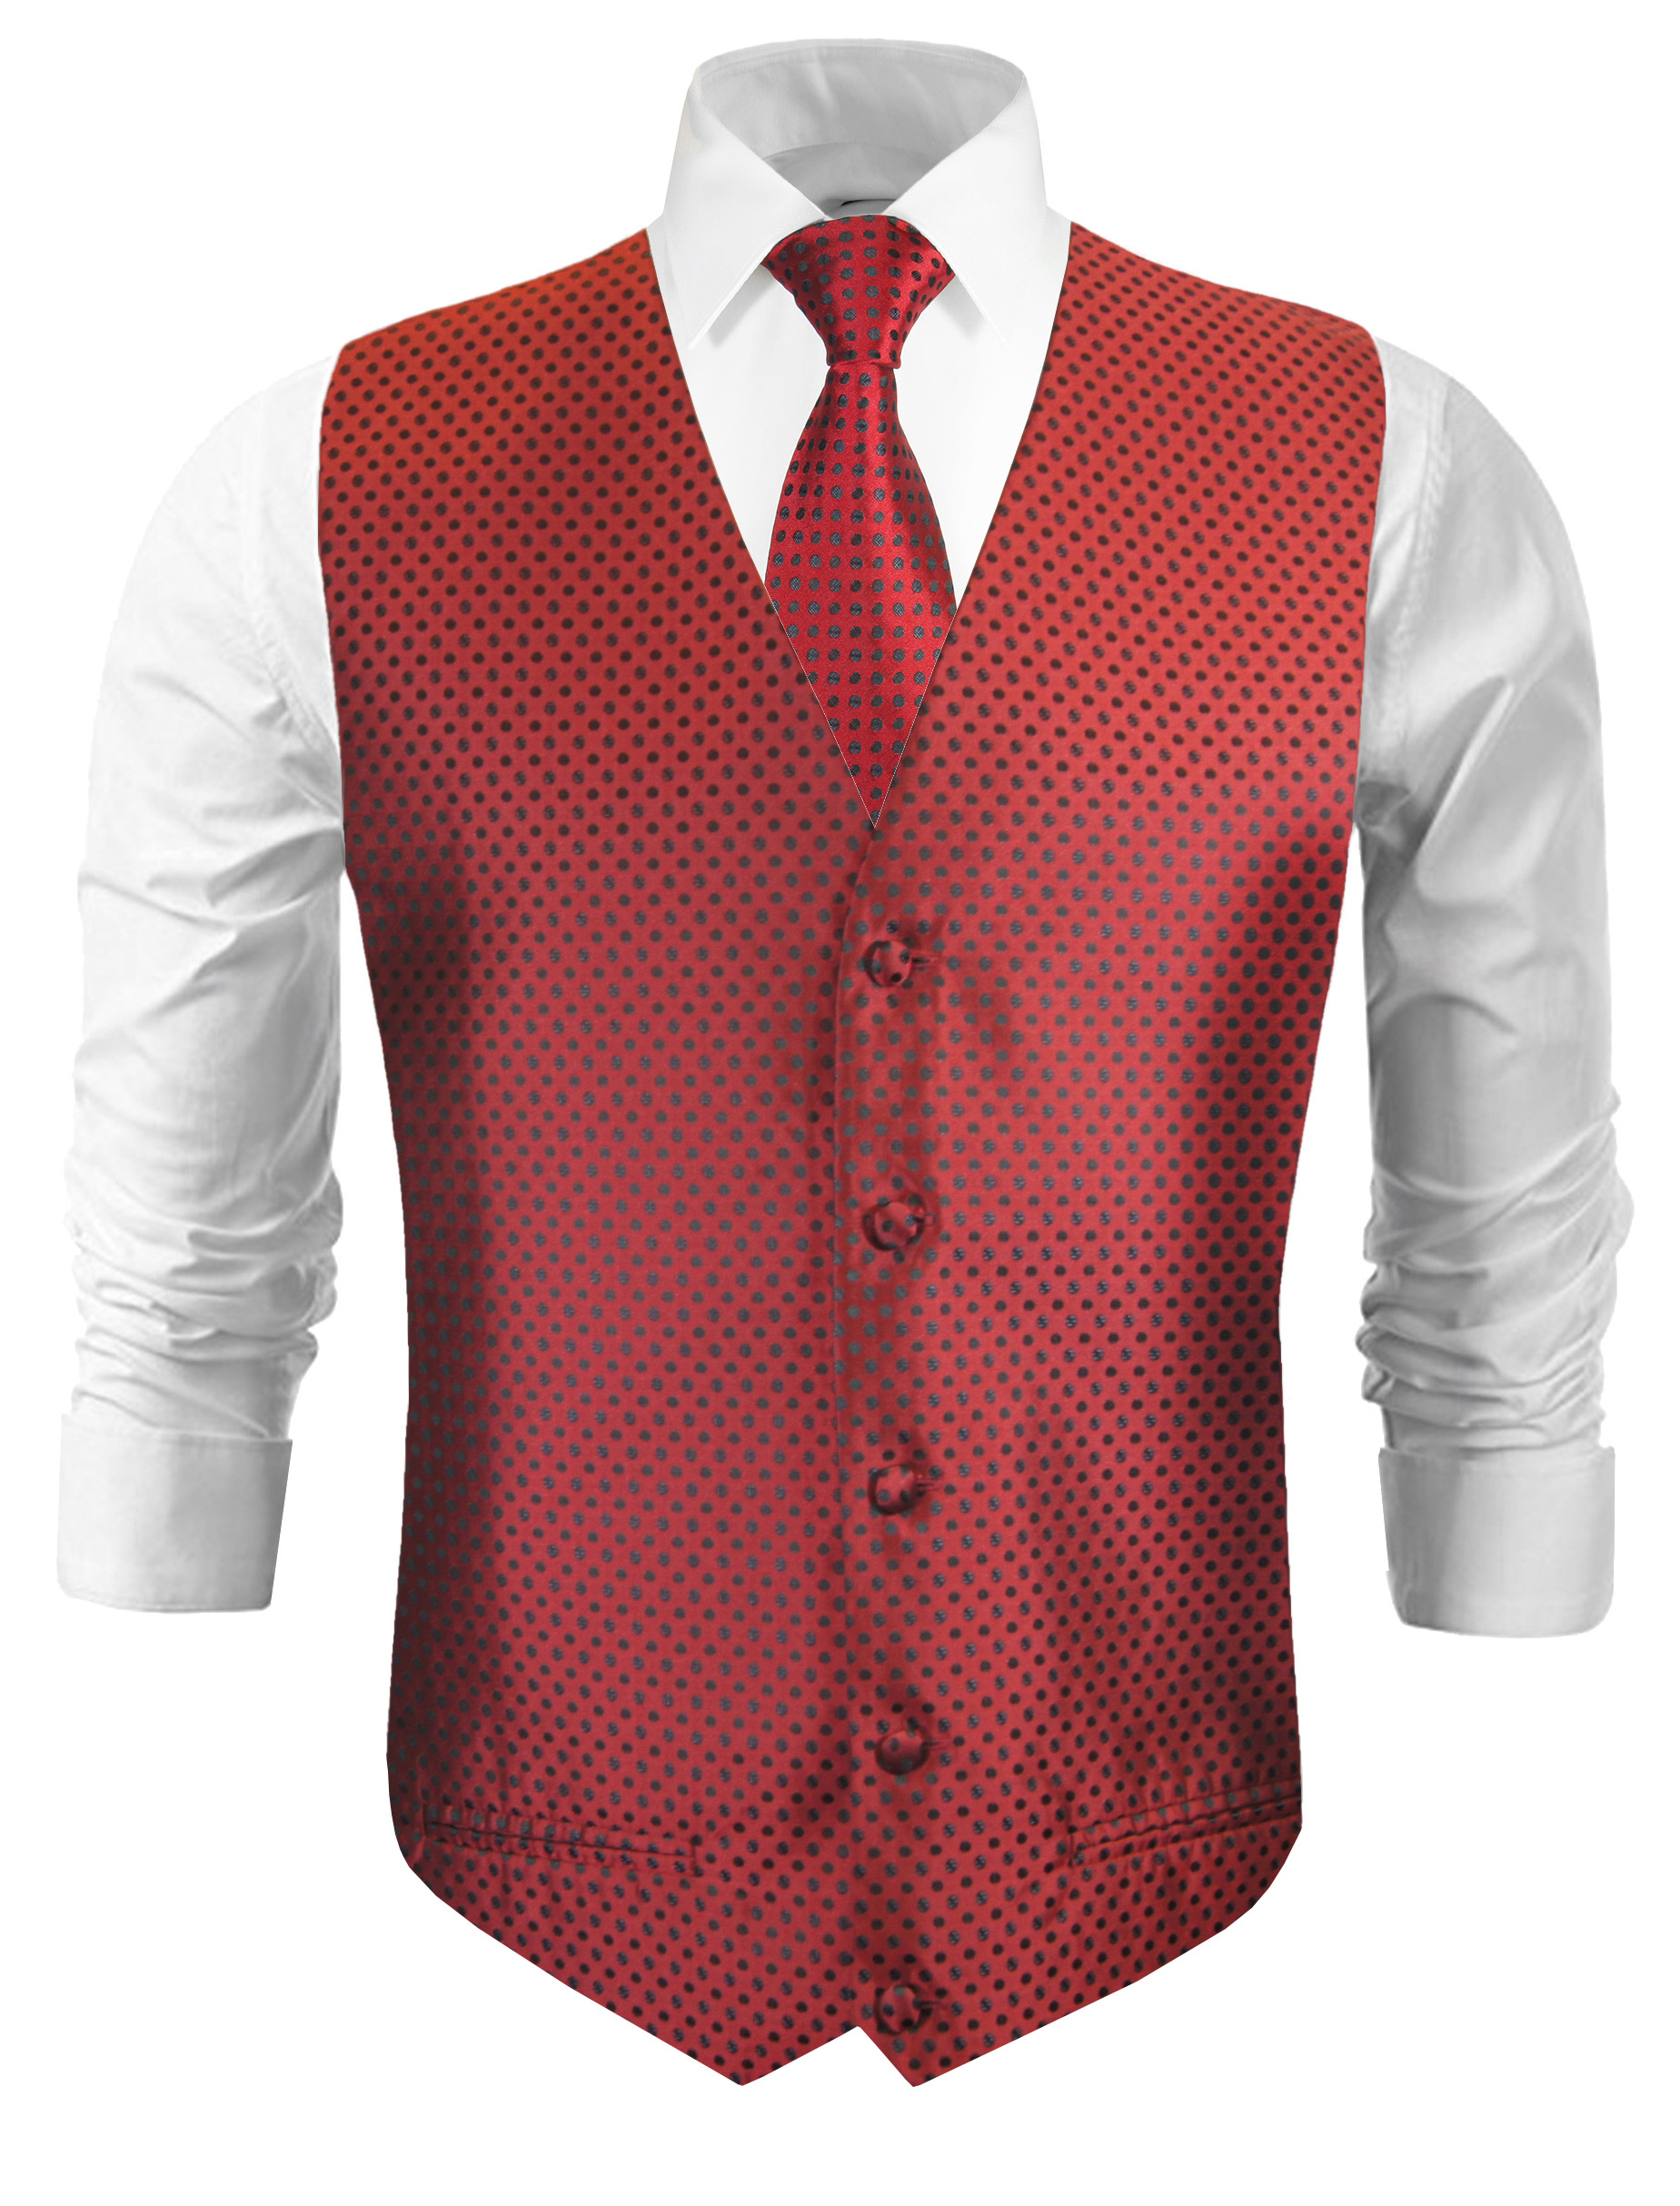 Festliche Weste mit Krawatte rot schwarz gepunktet v22 - Paul Malone Shop